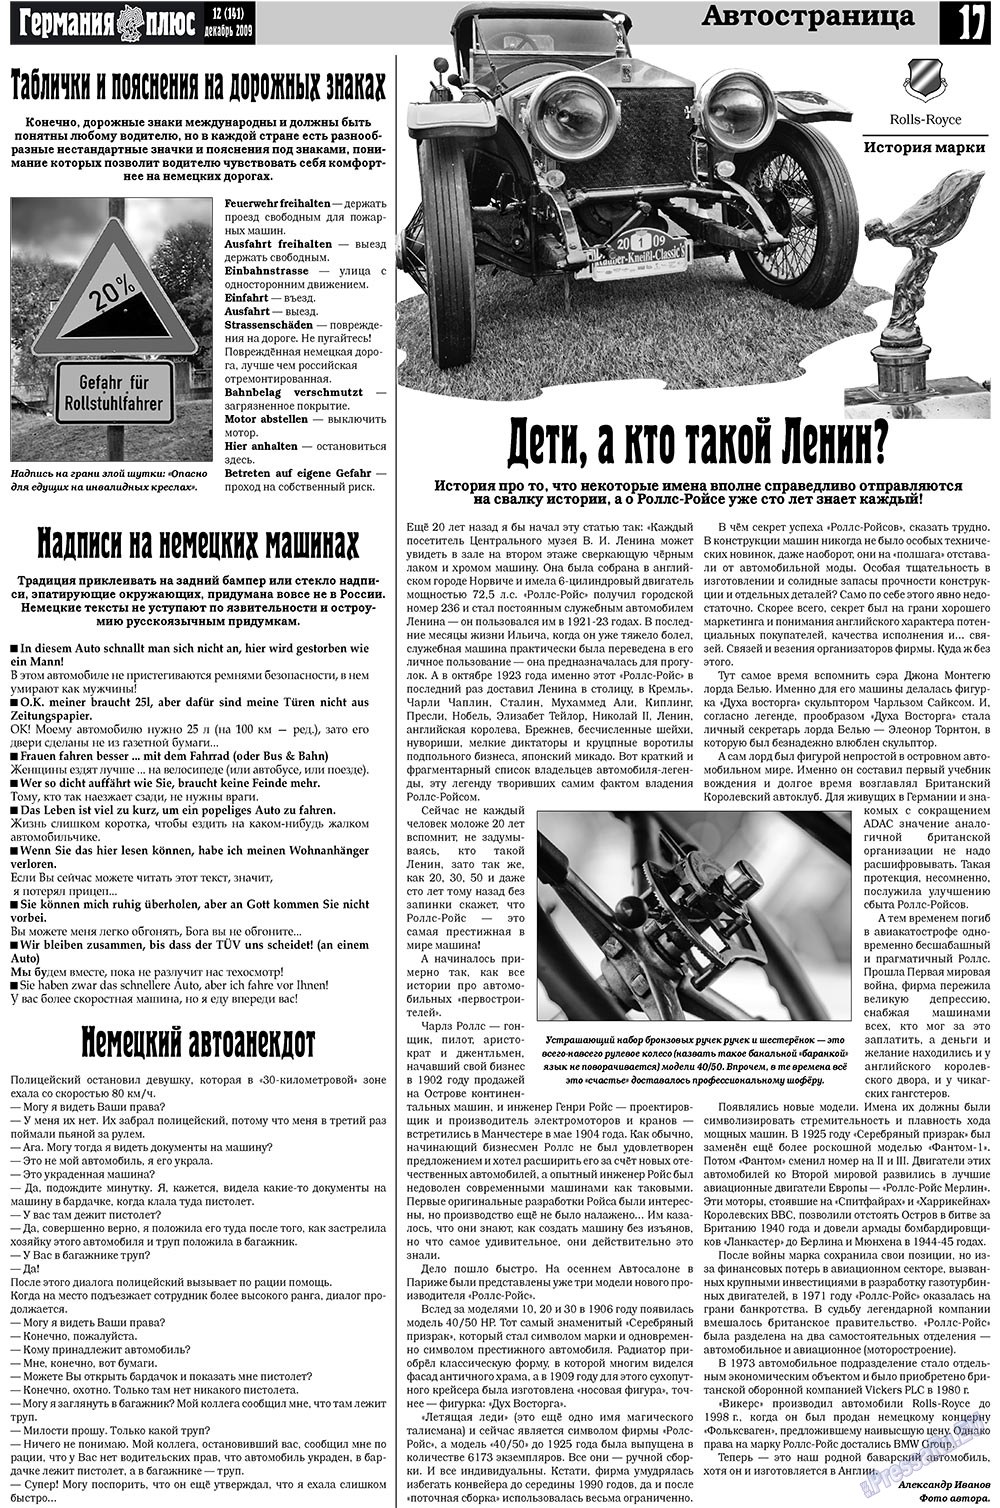 Германия плюс (газета). 2009 год, номер 12, стр. 17